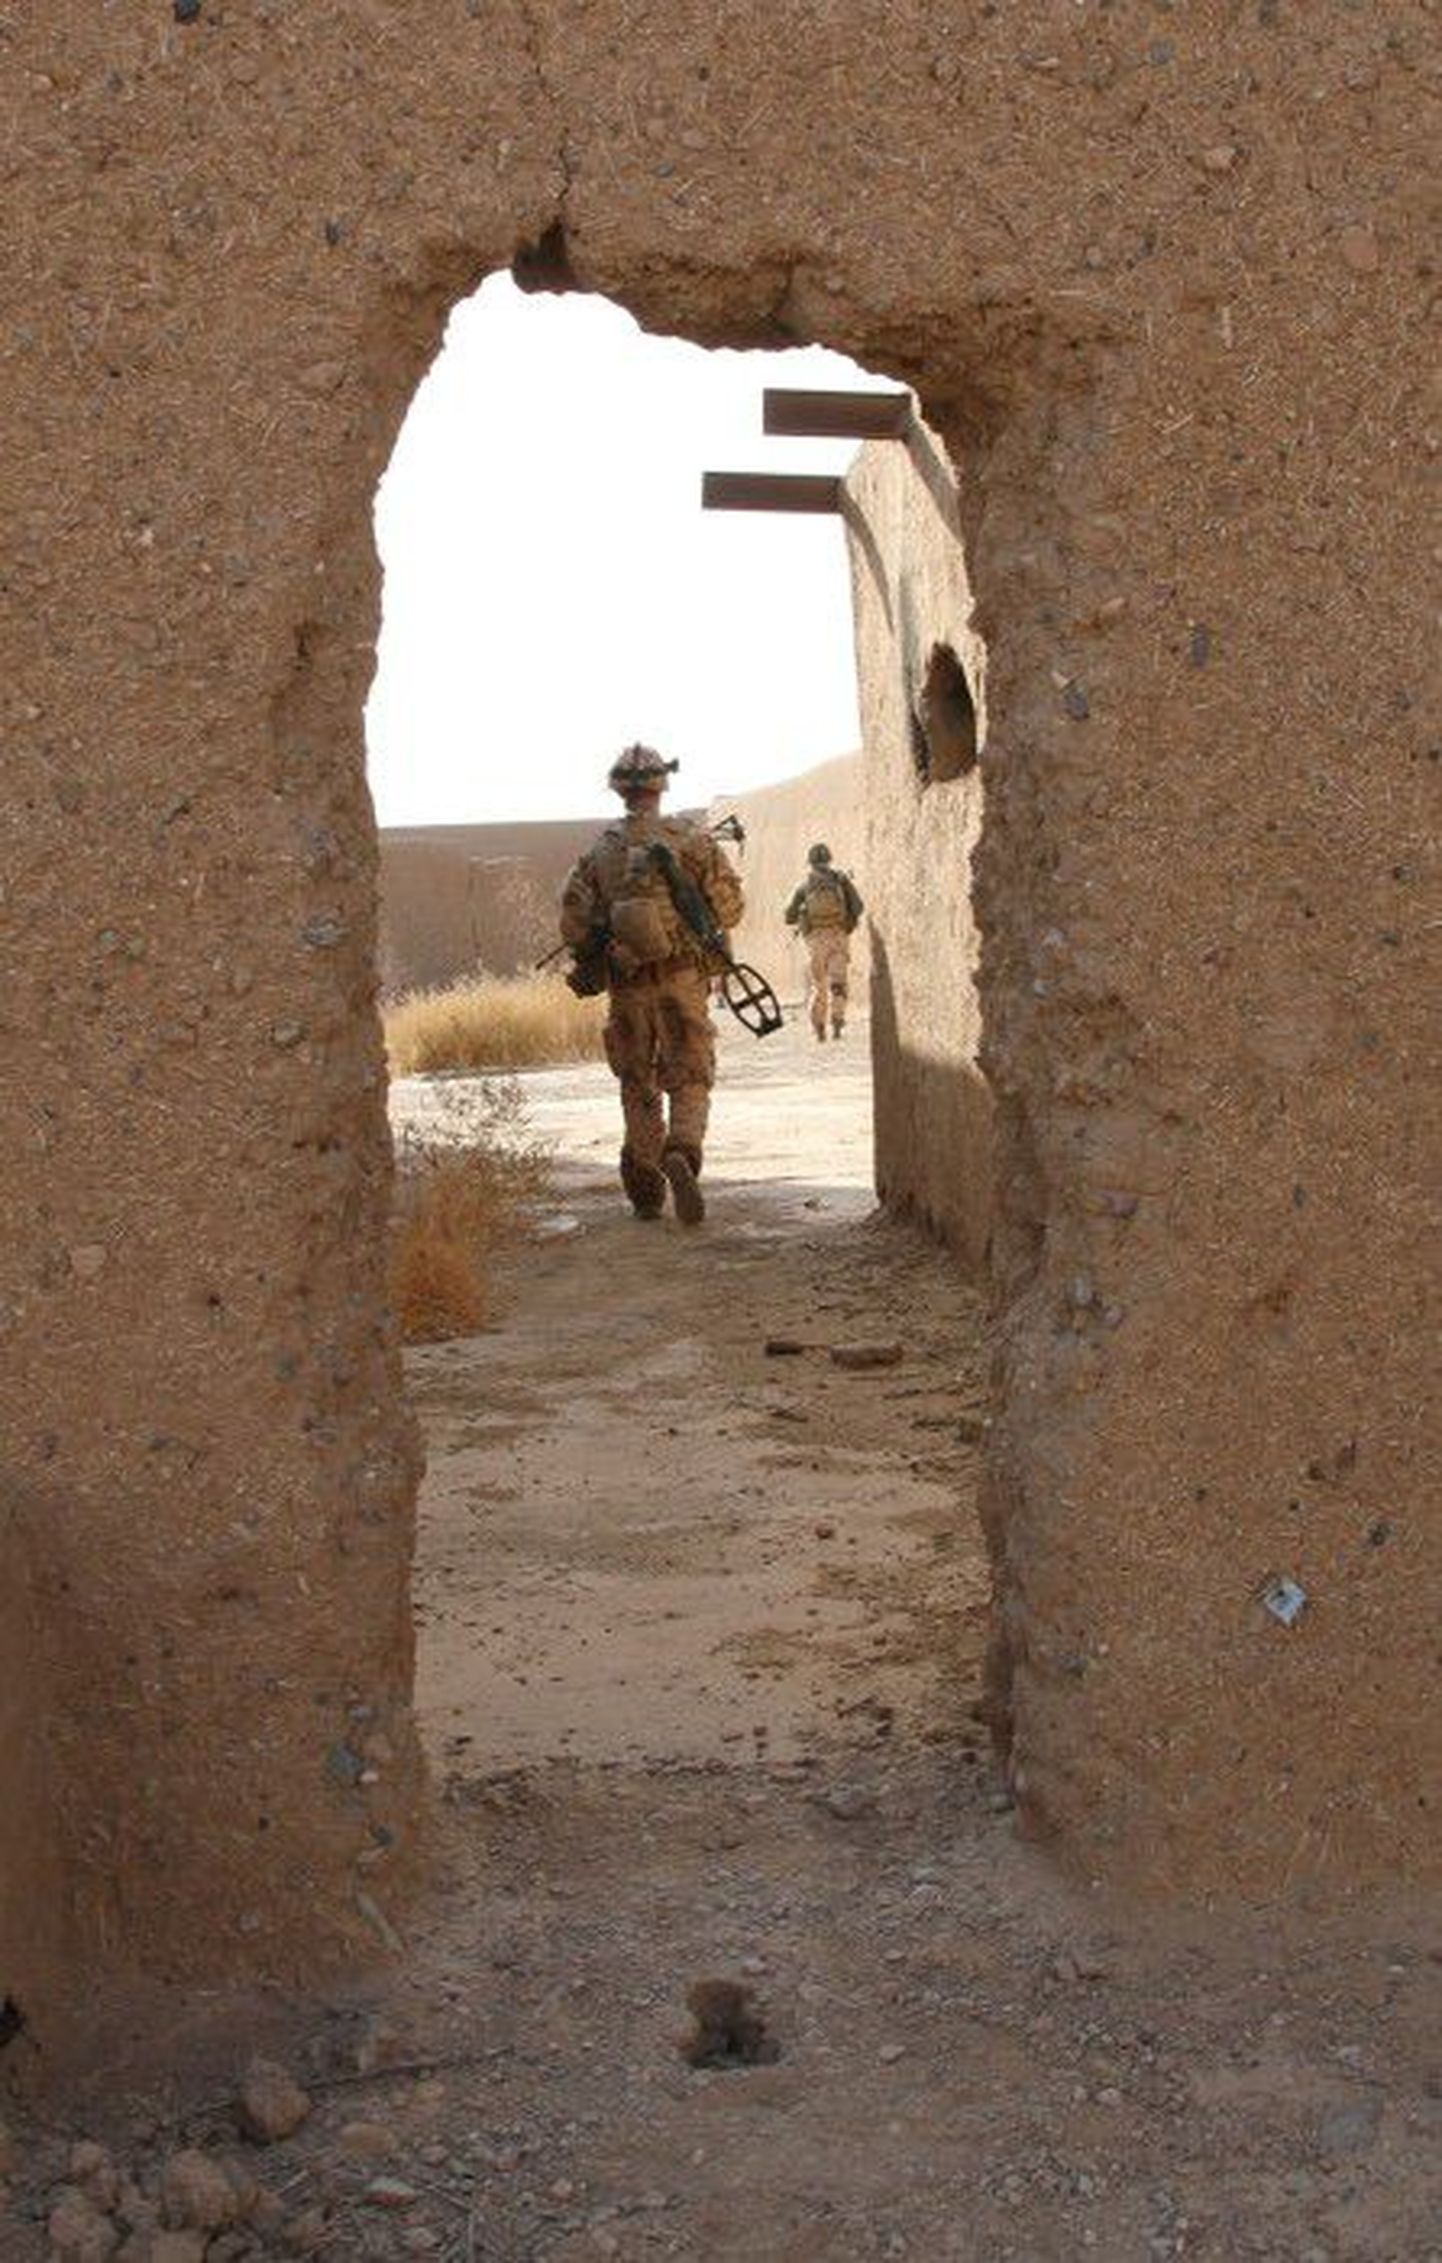 Estcoy-12 võitlejad Afganistanis.